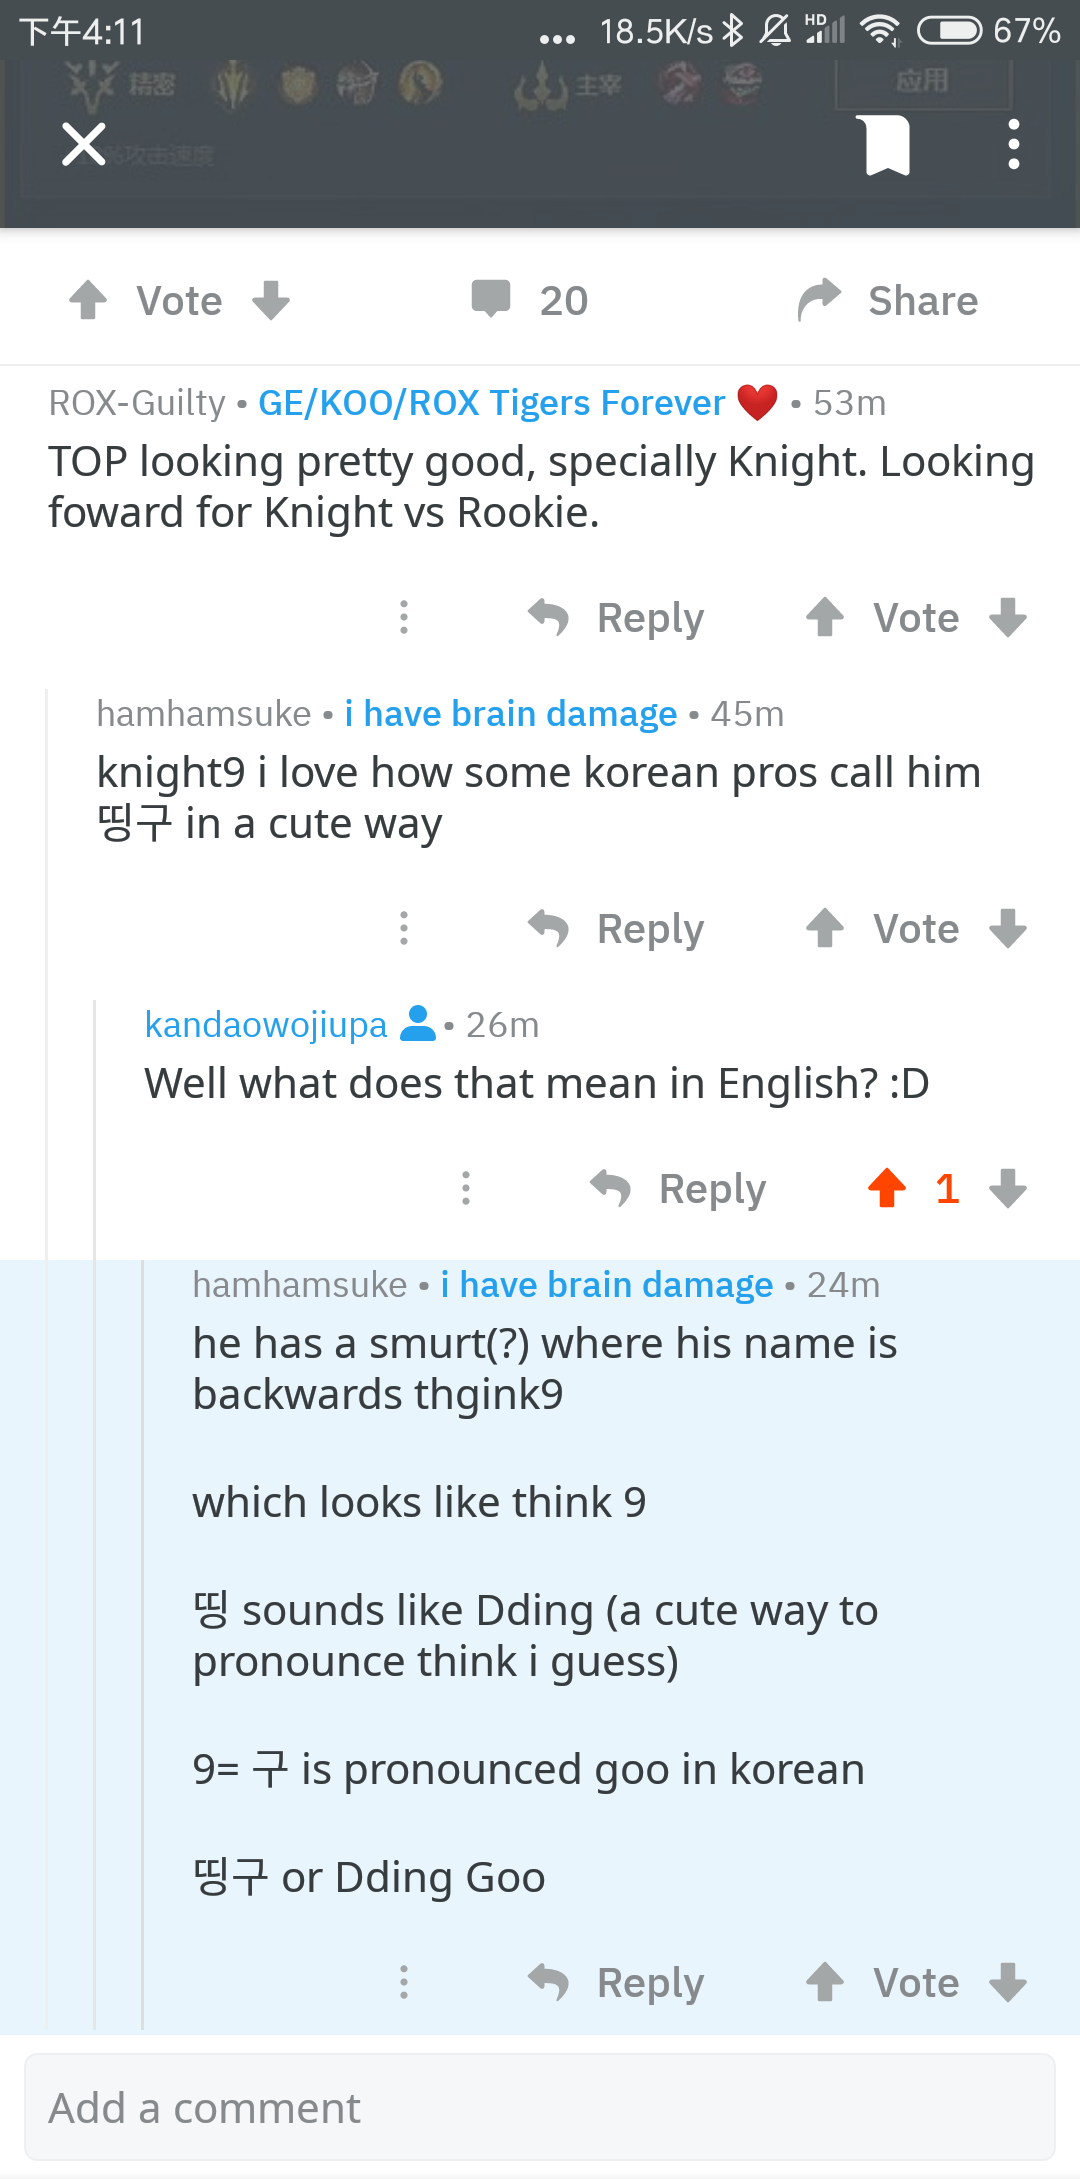 韩国职业选手称呼knight的昵称是叮咕